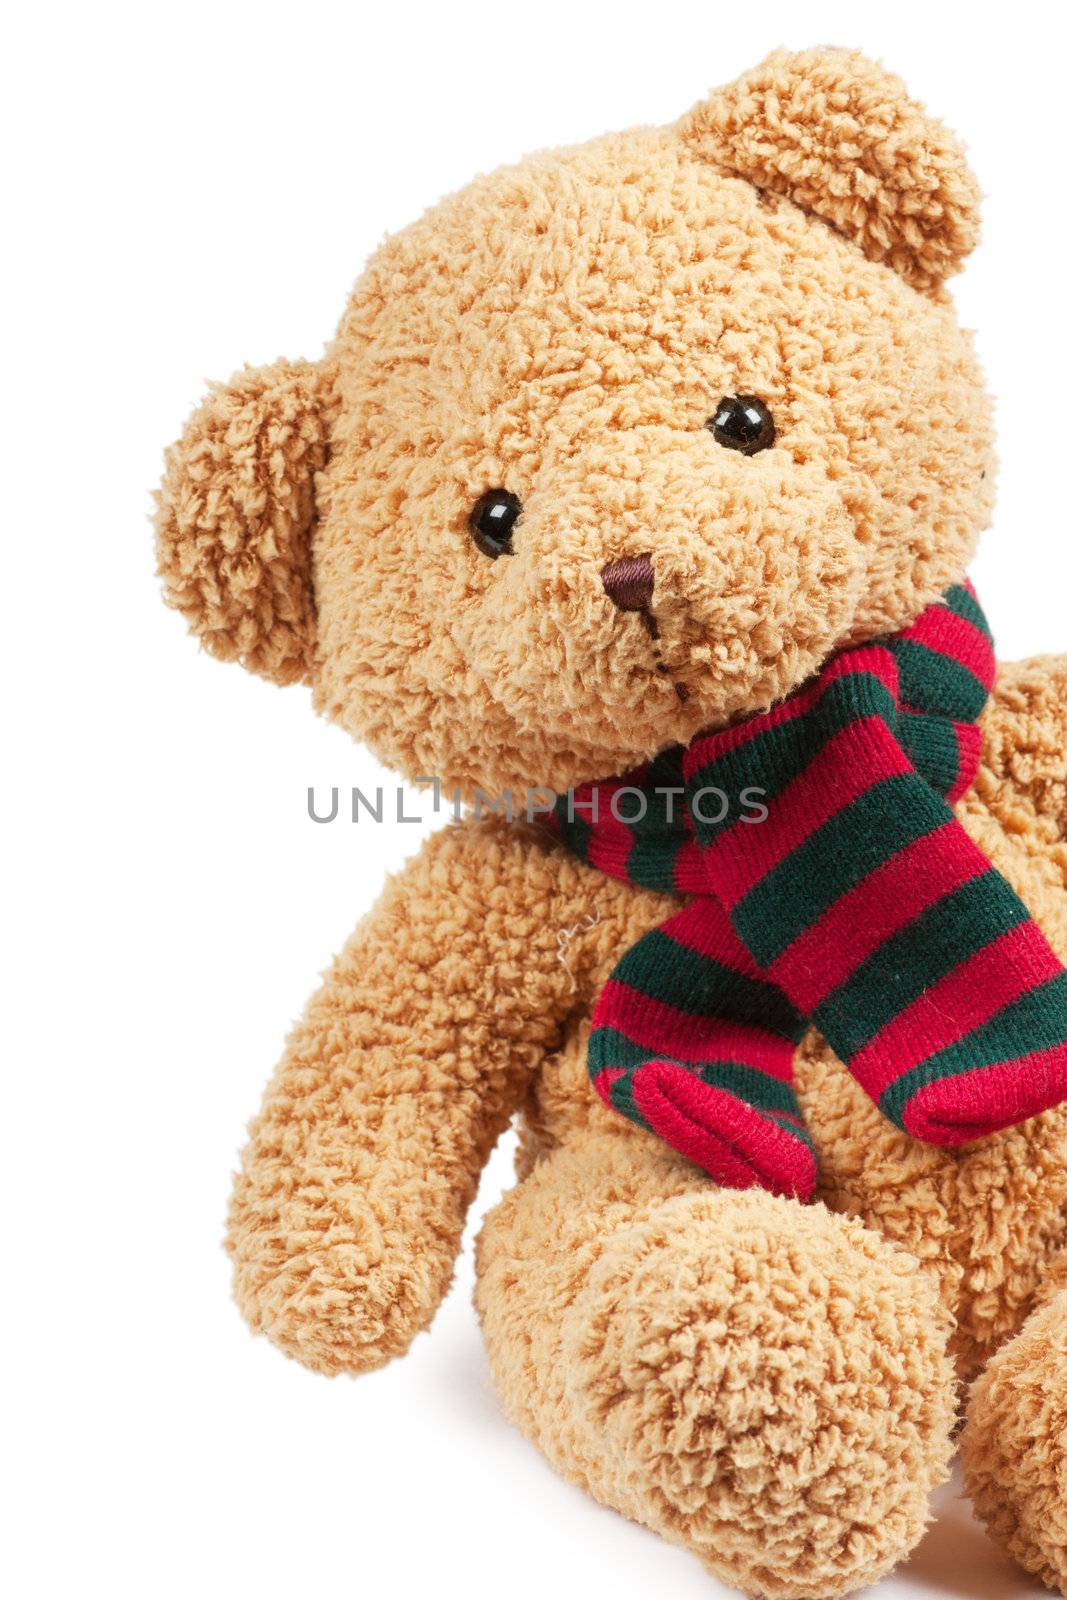 Teddy bear by AGorohov